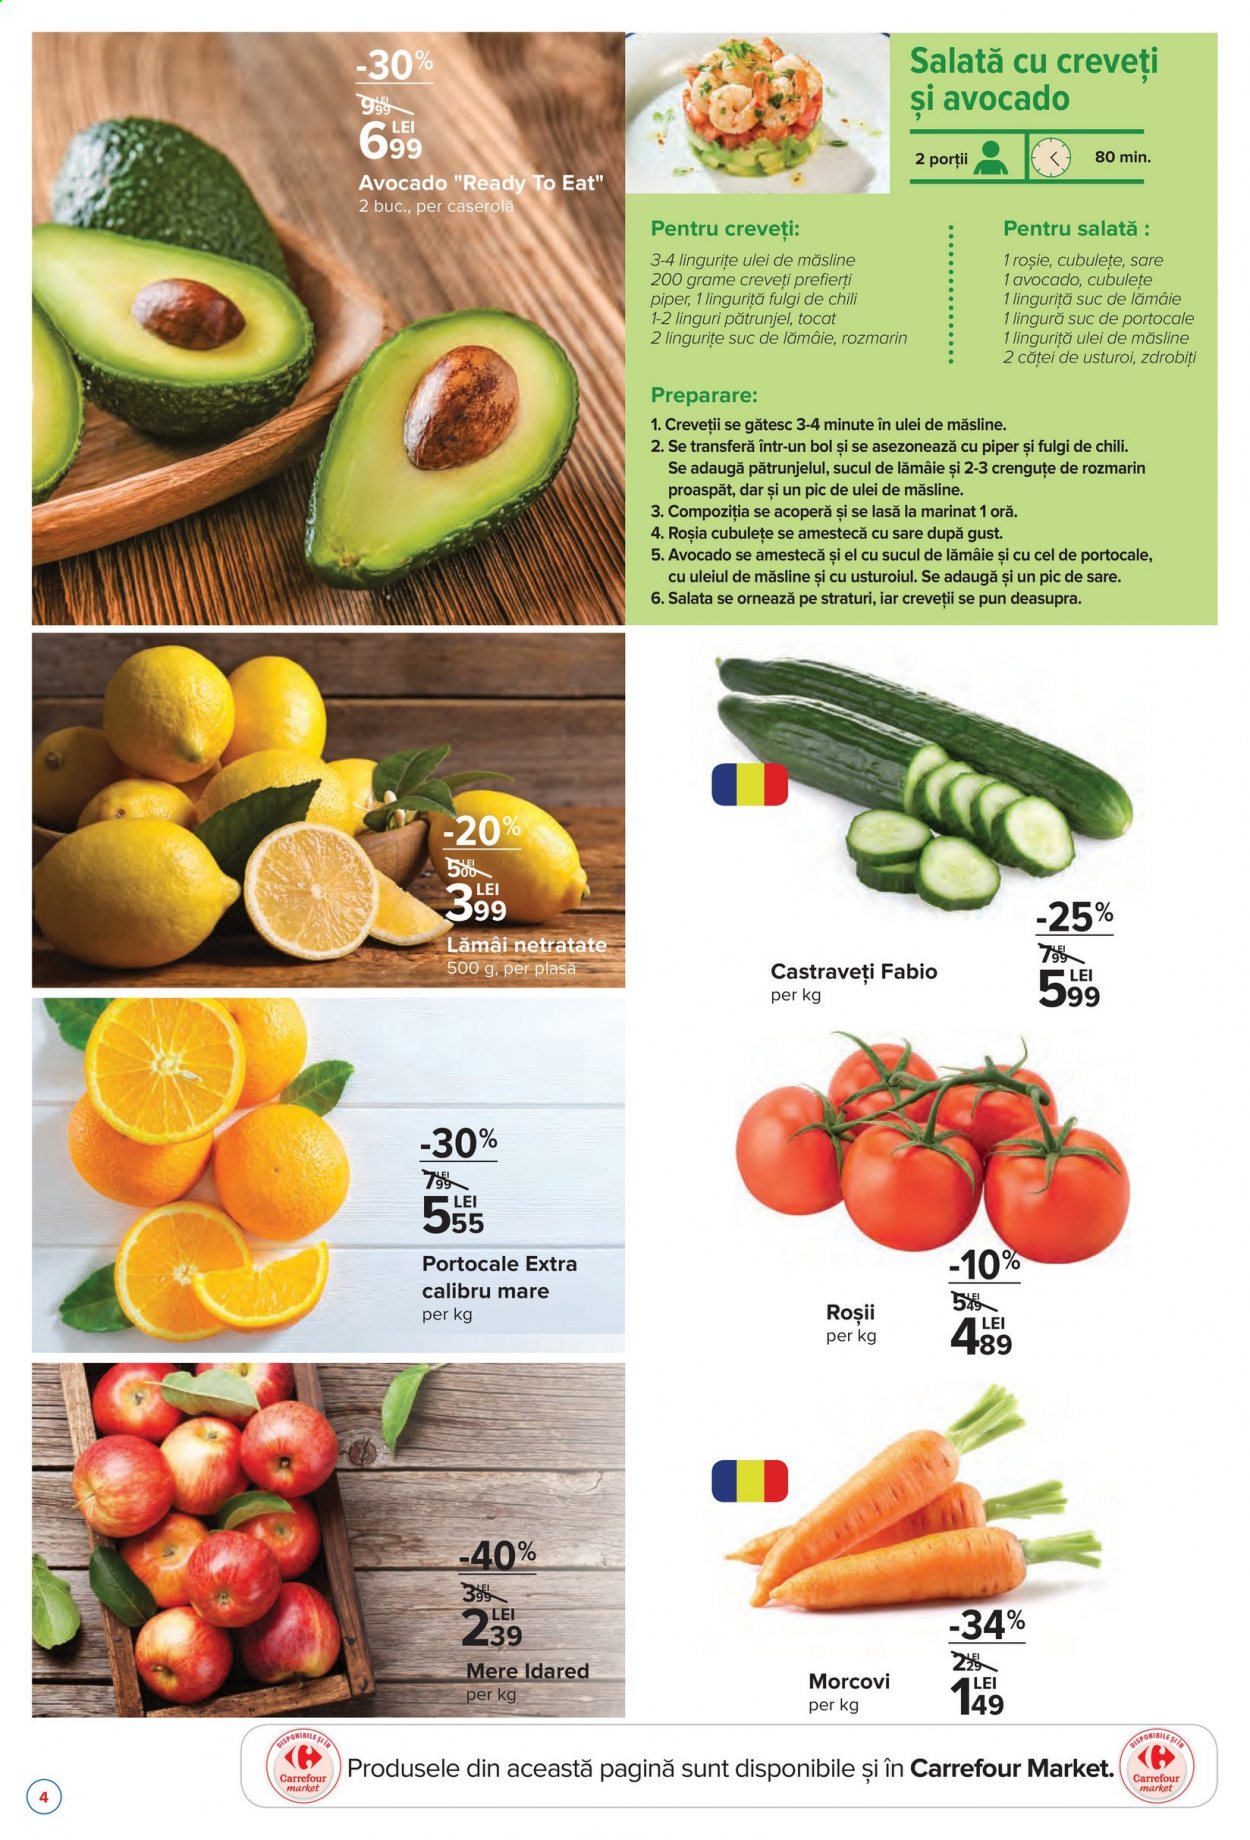 thumbnail - Cataloage Carrefour - 26.04.2021 - 05.05.2021 - Produse în vânzare - morcovi, lămâi, avocado, mere, castravețe, ulei de măsline, suc. Pagina 4.